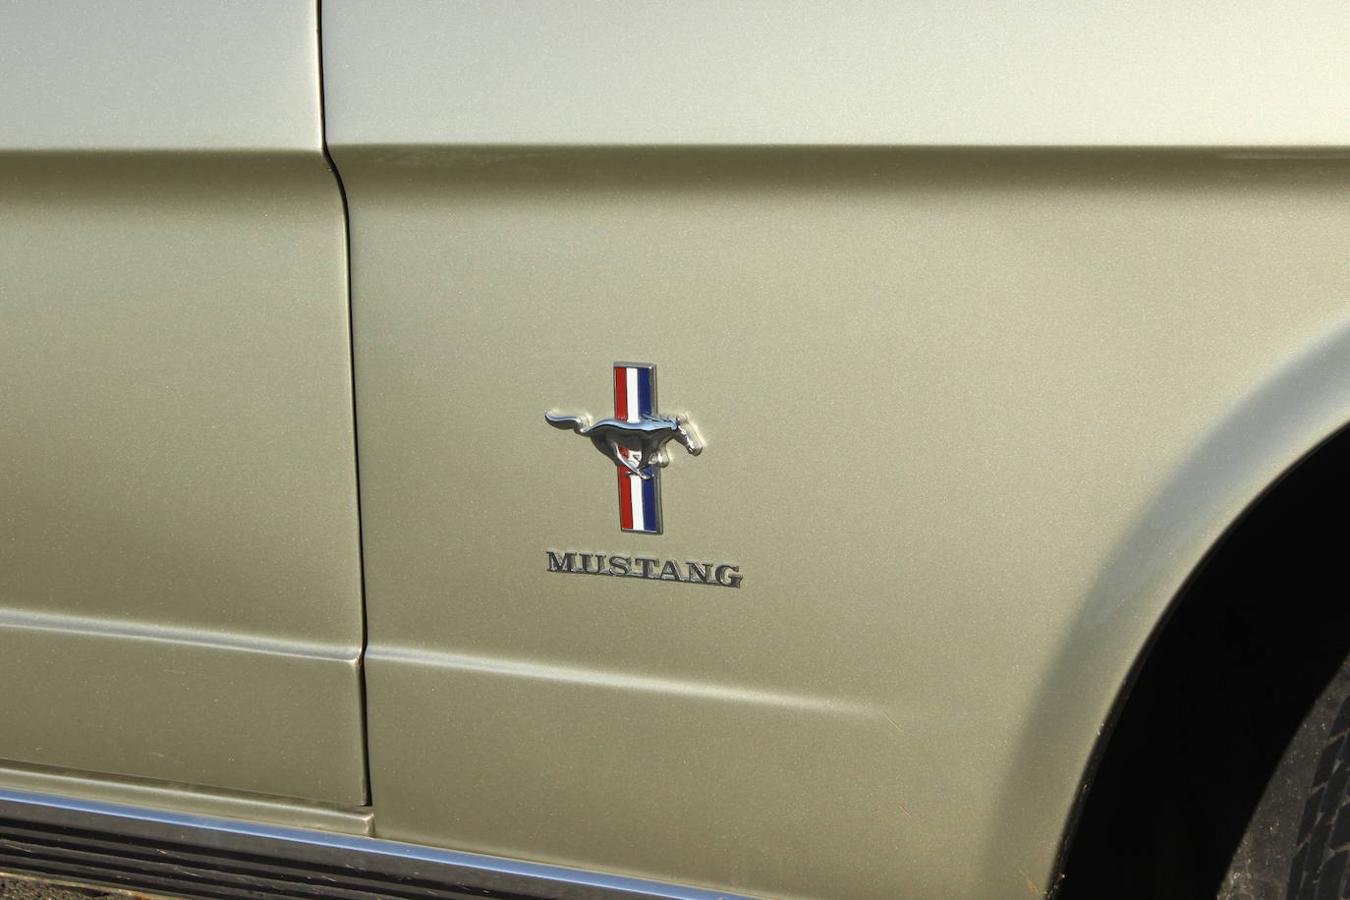 Juntamos al nuevo Ford Mustang Bullit con el Mustang inicial de 1966, dos coches que además de compartir su mecánica V8 también comparten el mismo espíritu y carisma que tantos éxitos les ha brindado